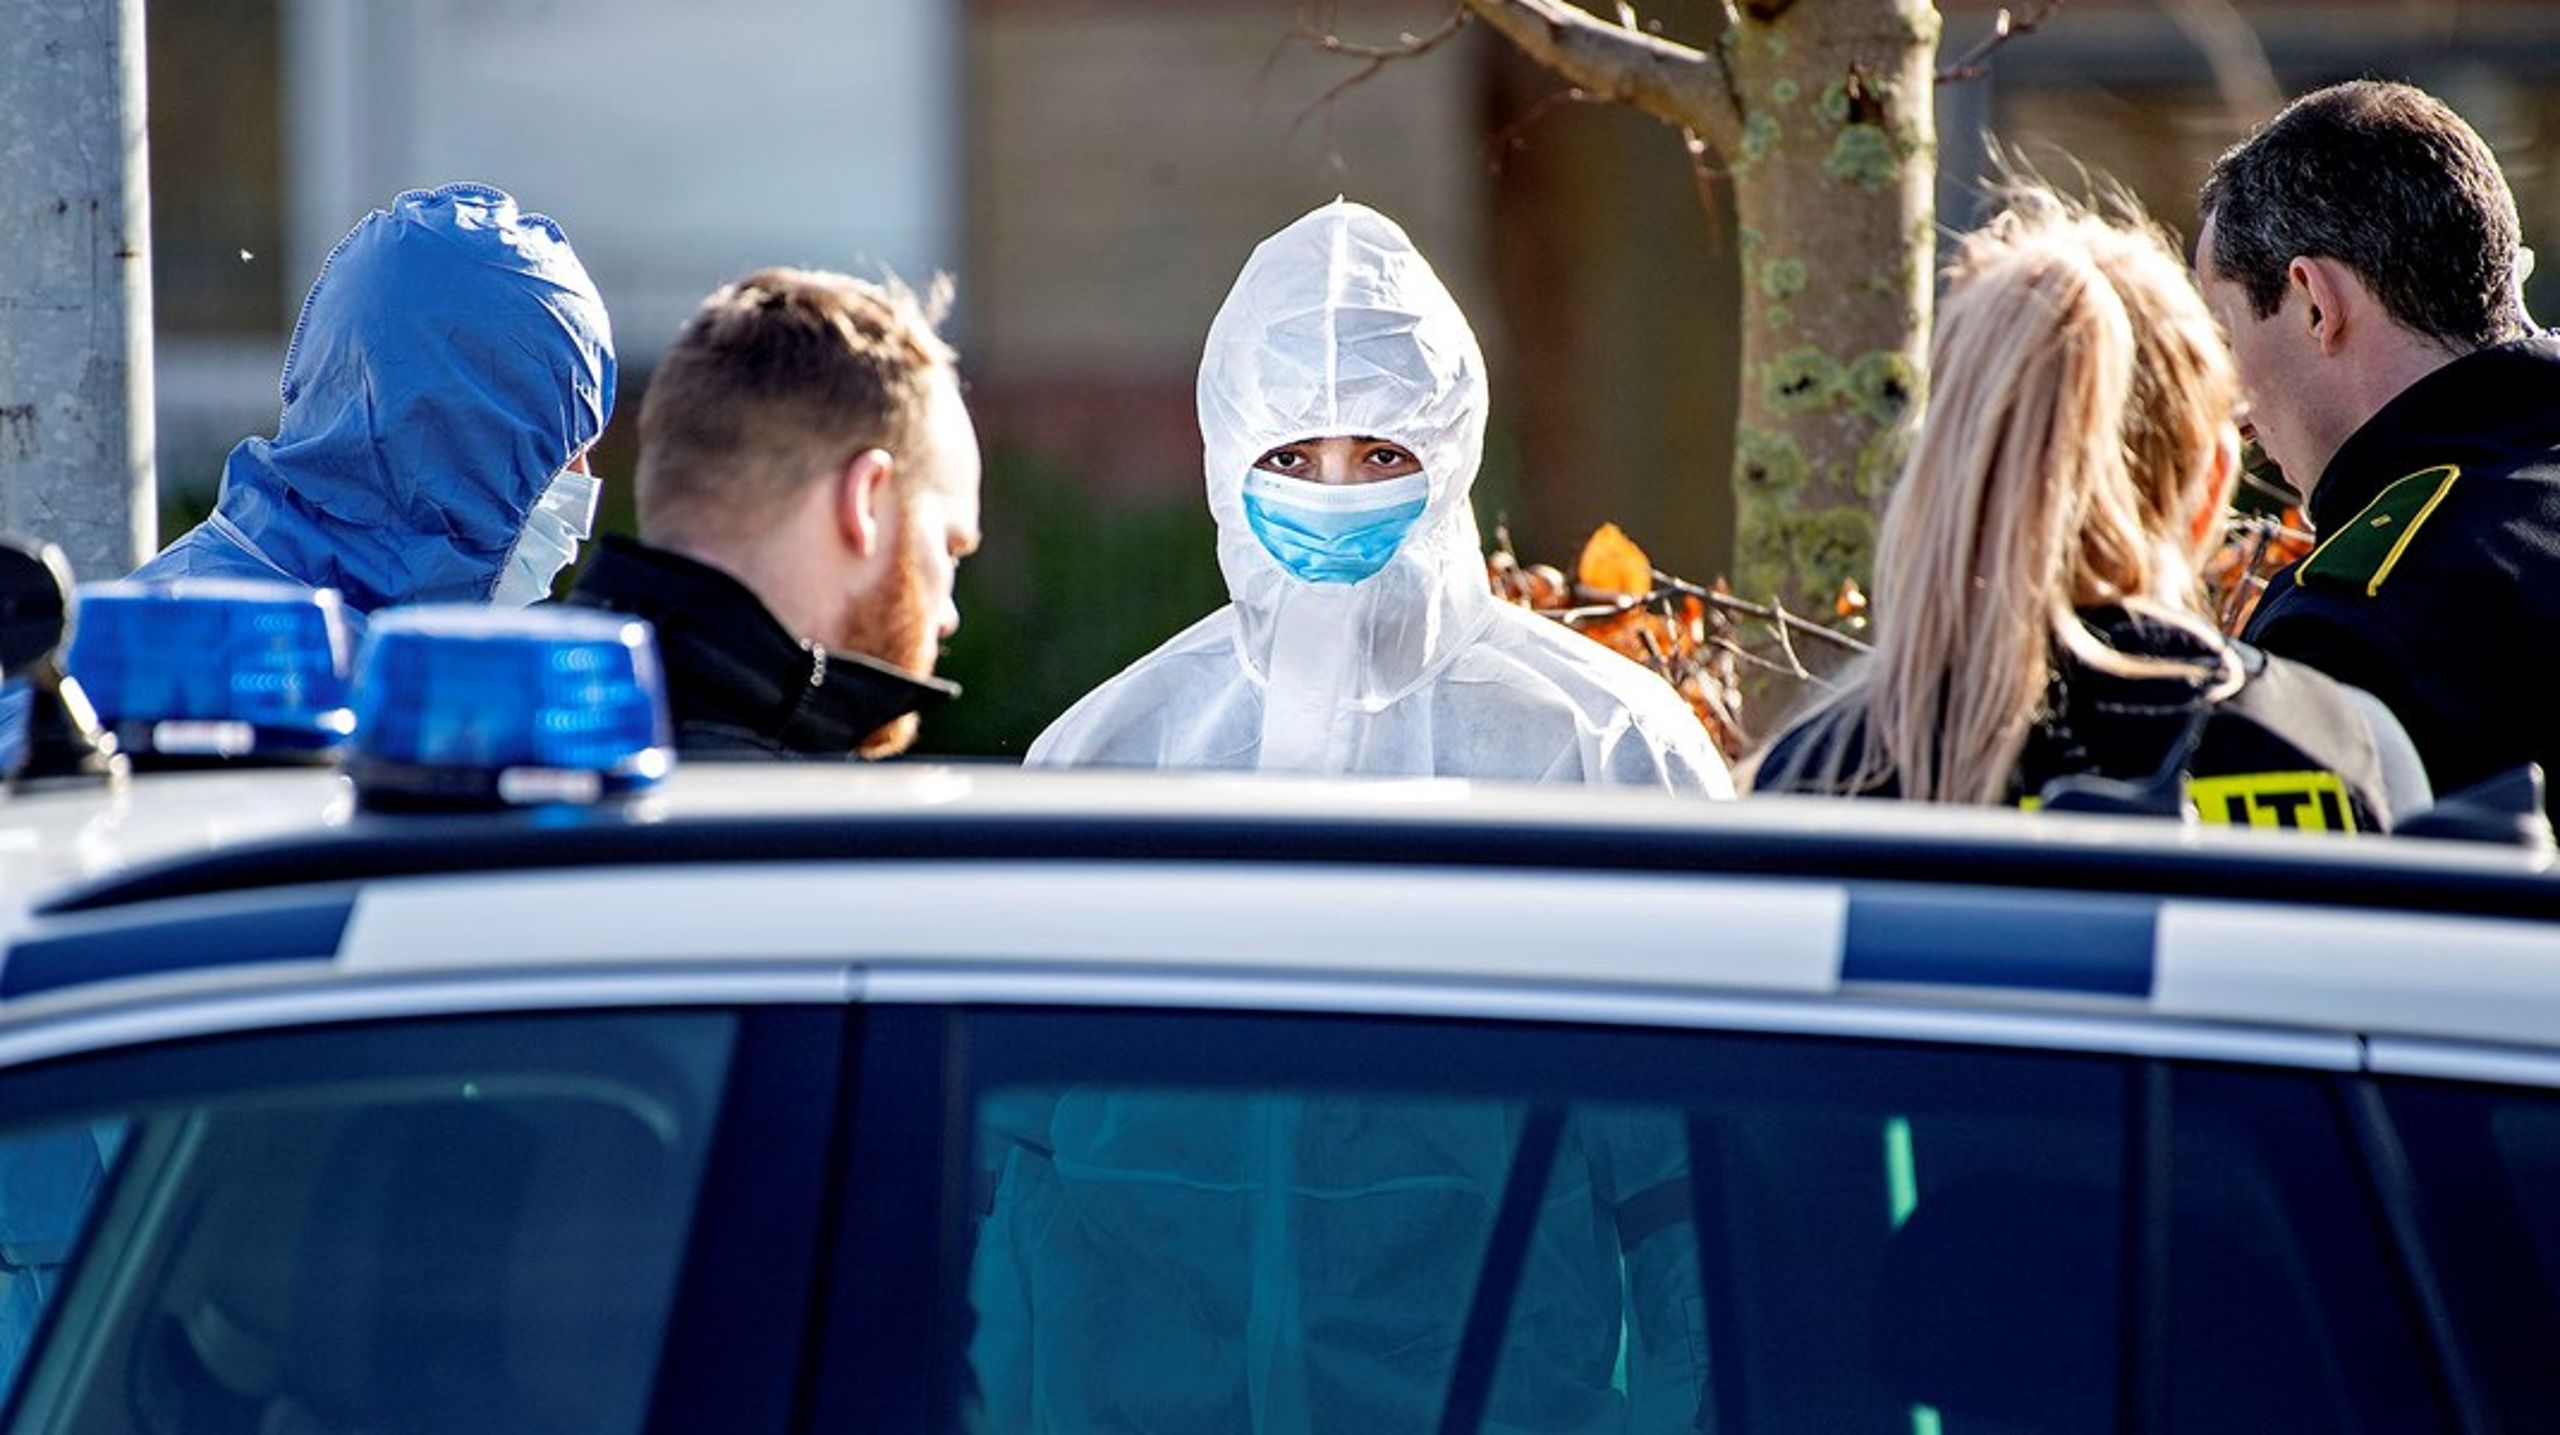 En anholdt iføres DNA-dragt til sikring af beviser. Dansk politi står til at ende uden for EU's samarbejde, der giver adgang til at søge direkte i andre landes registre over netop DNA, fingeraftryk, køretøjer med mere.